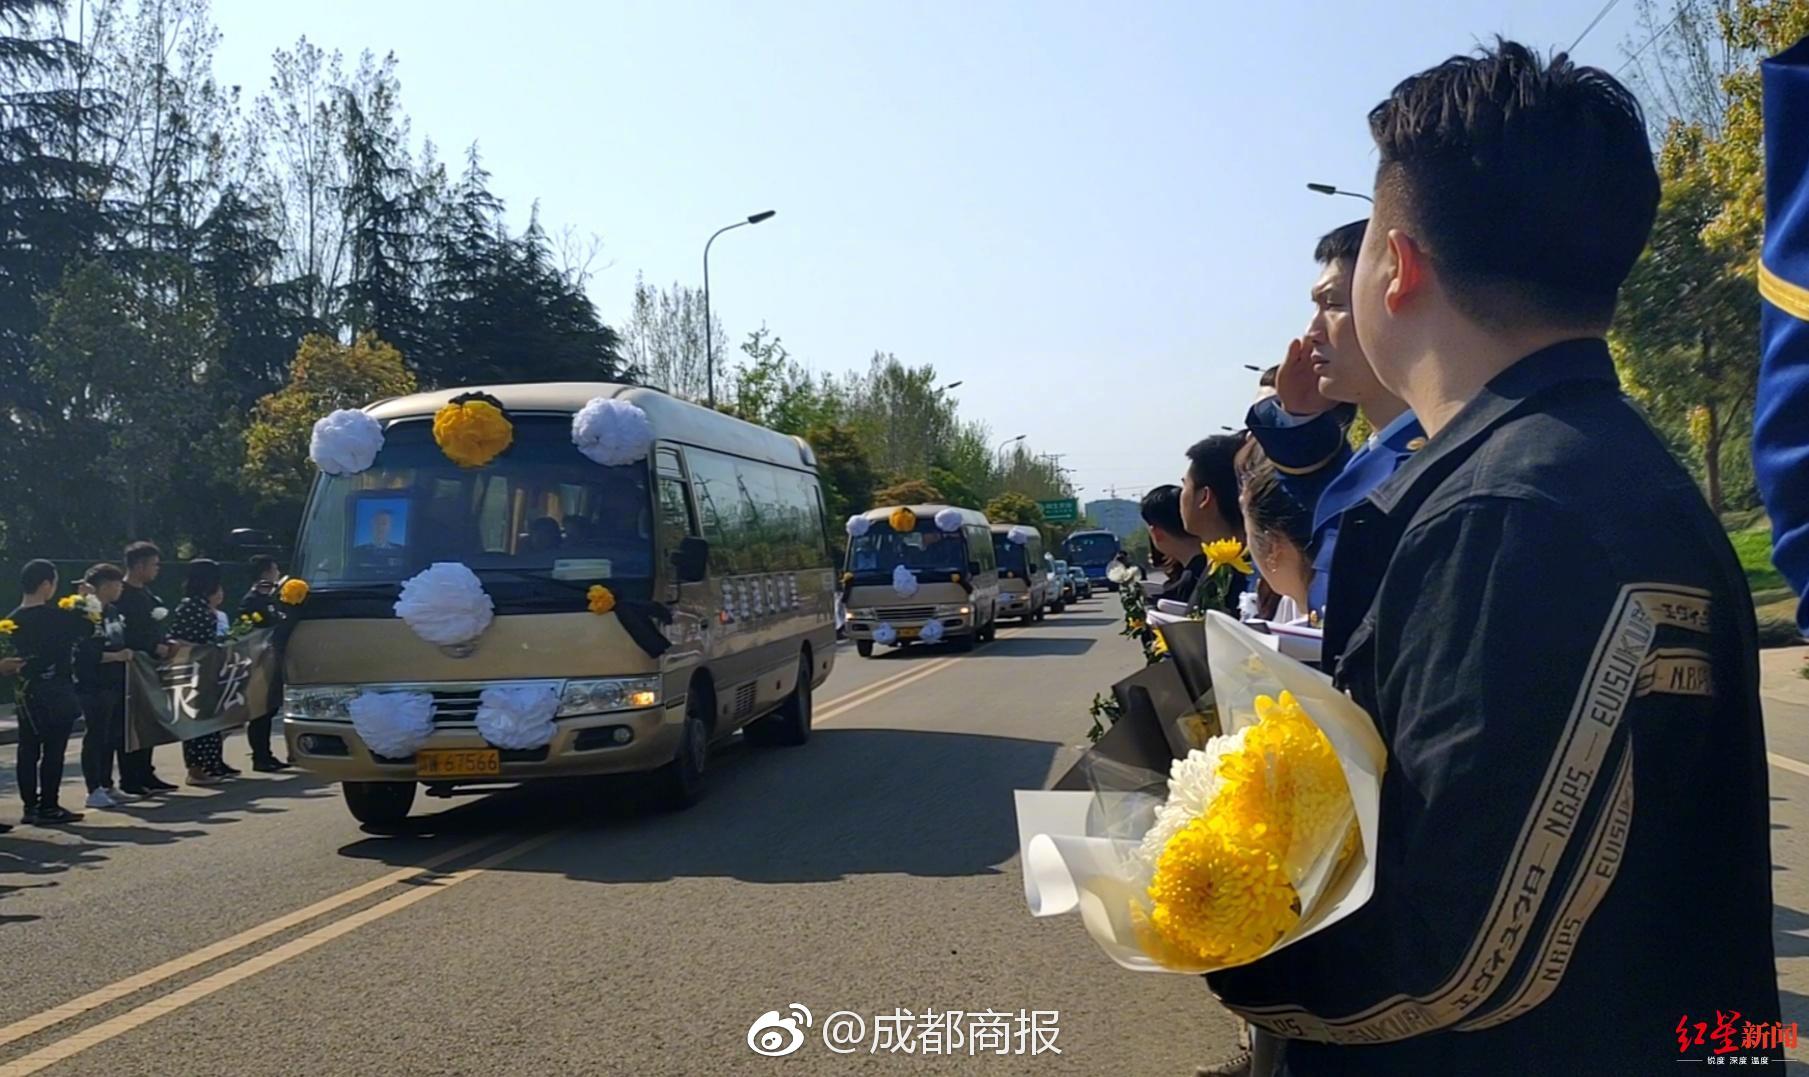 @所有在北京的人,开车千万小心这条道,一天就罚了3740起!